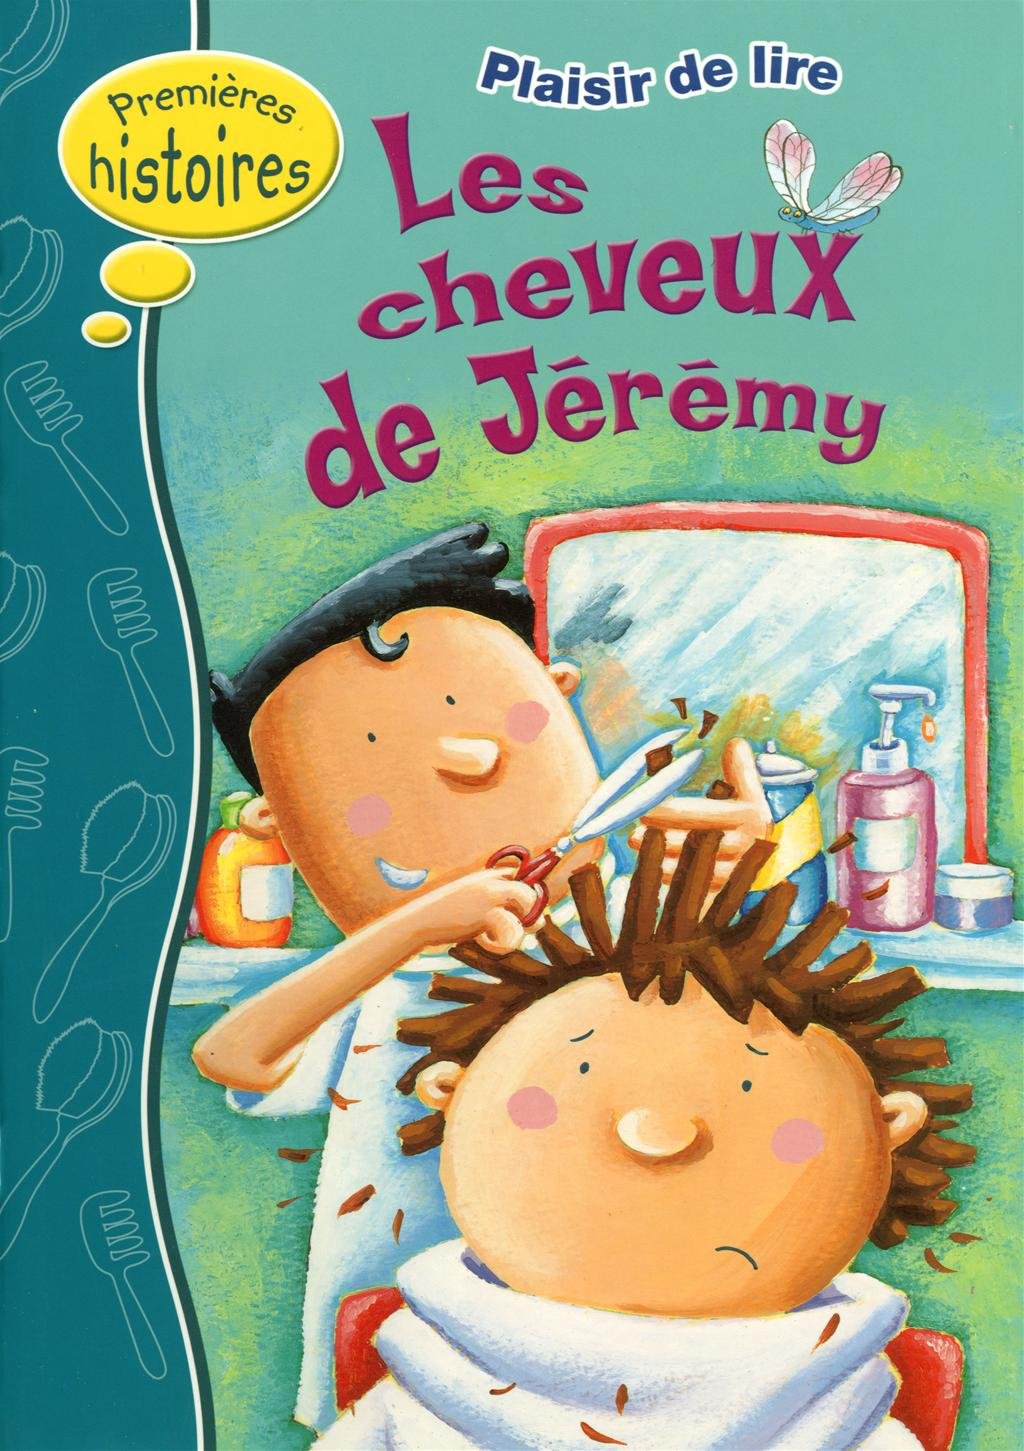 Livre ISBN 2762592801 Premières histoires (Plaisir de lire) : Les cheveux de Jérémy